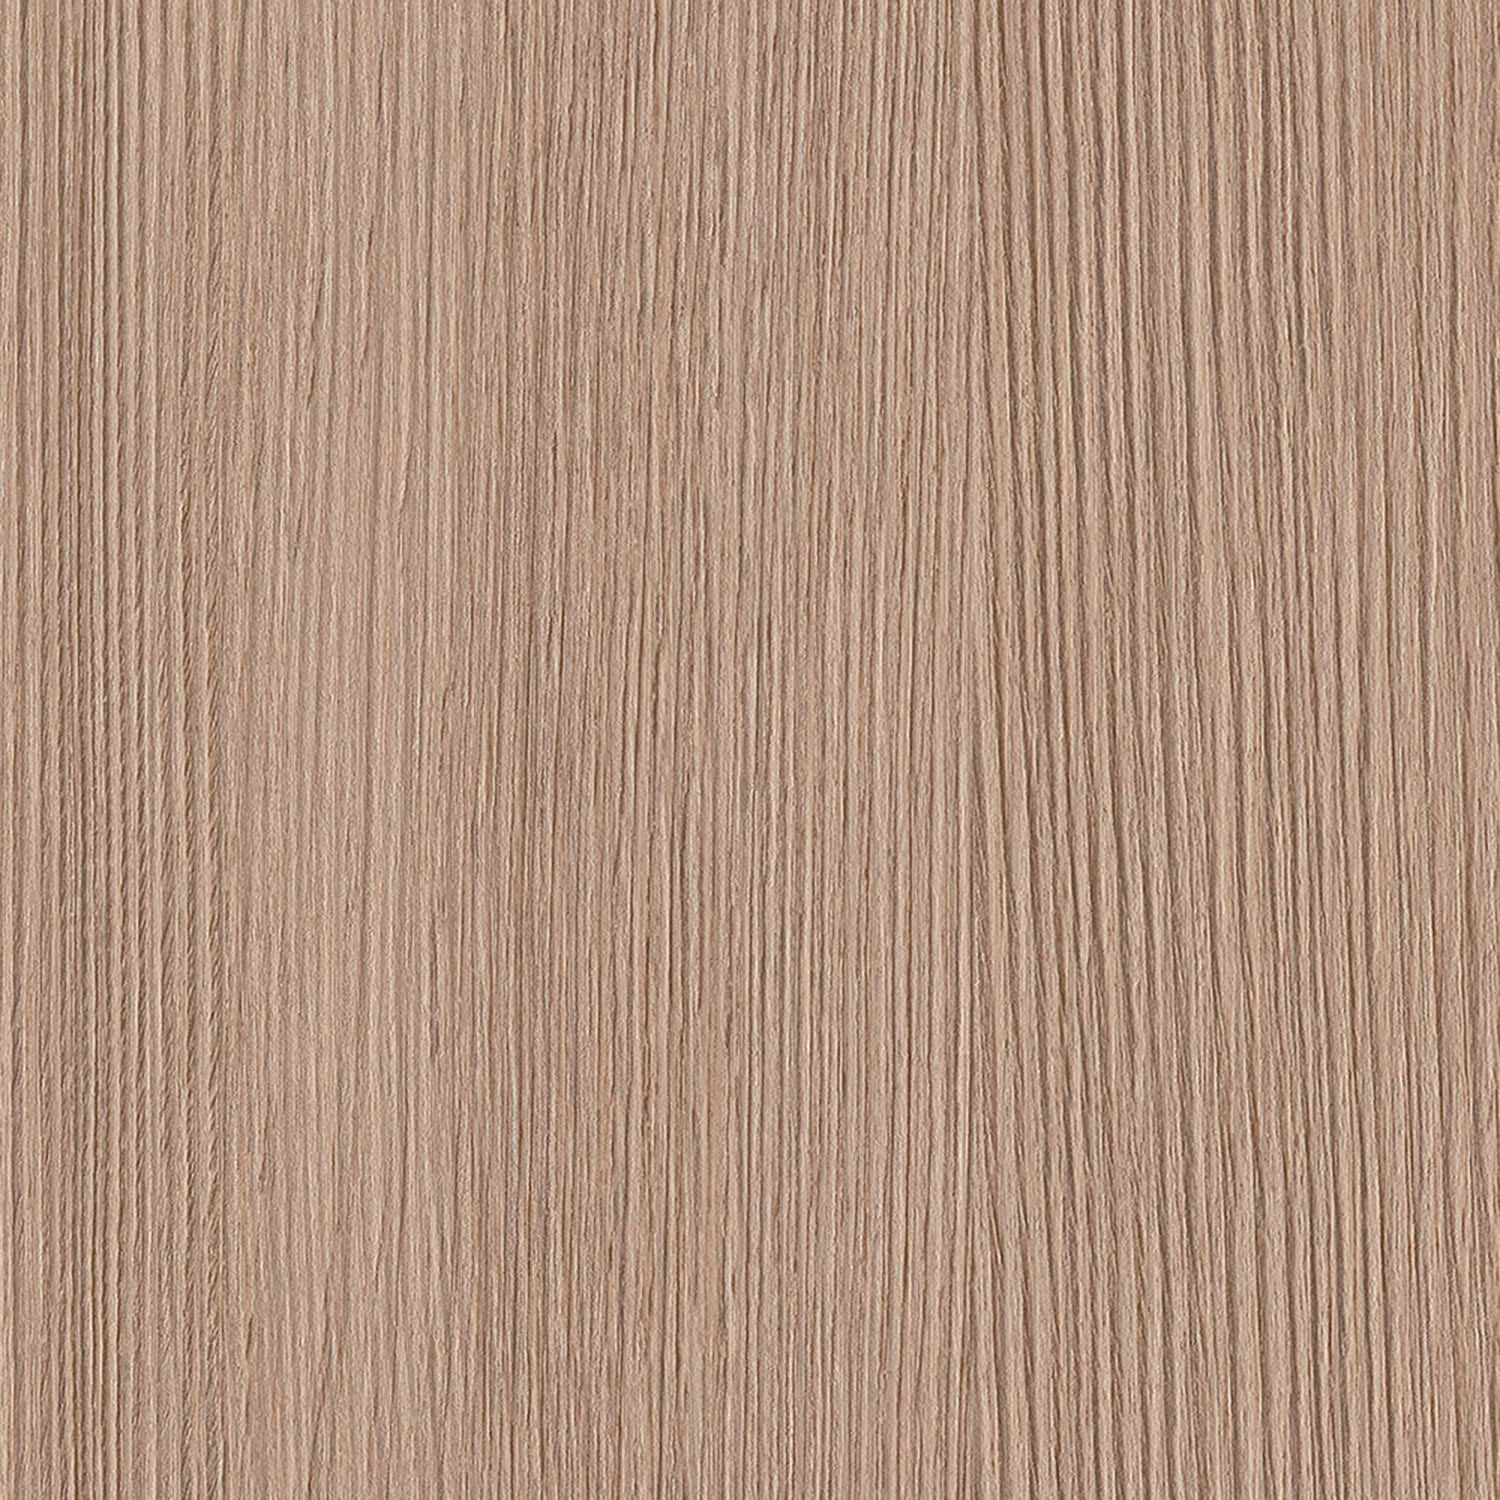 Rouleau adhésif pour meuble imitant le bois de chêne avec une lasure foncée.